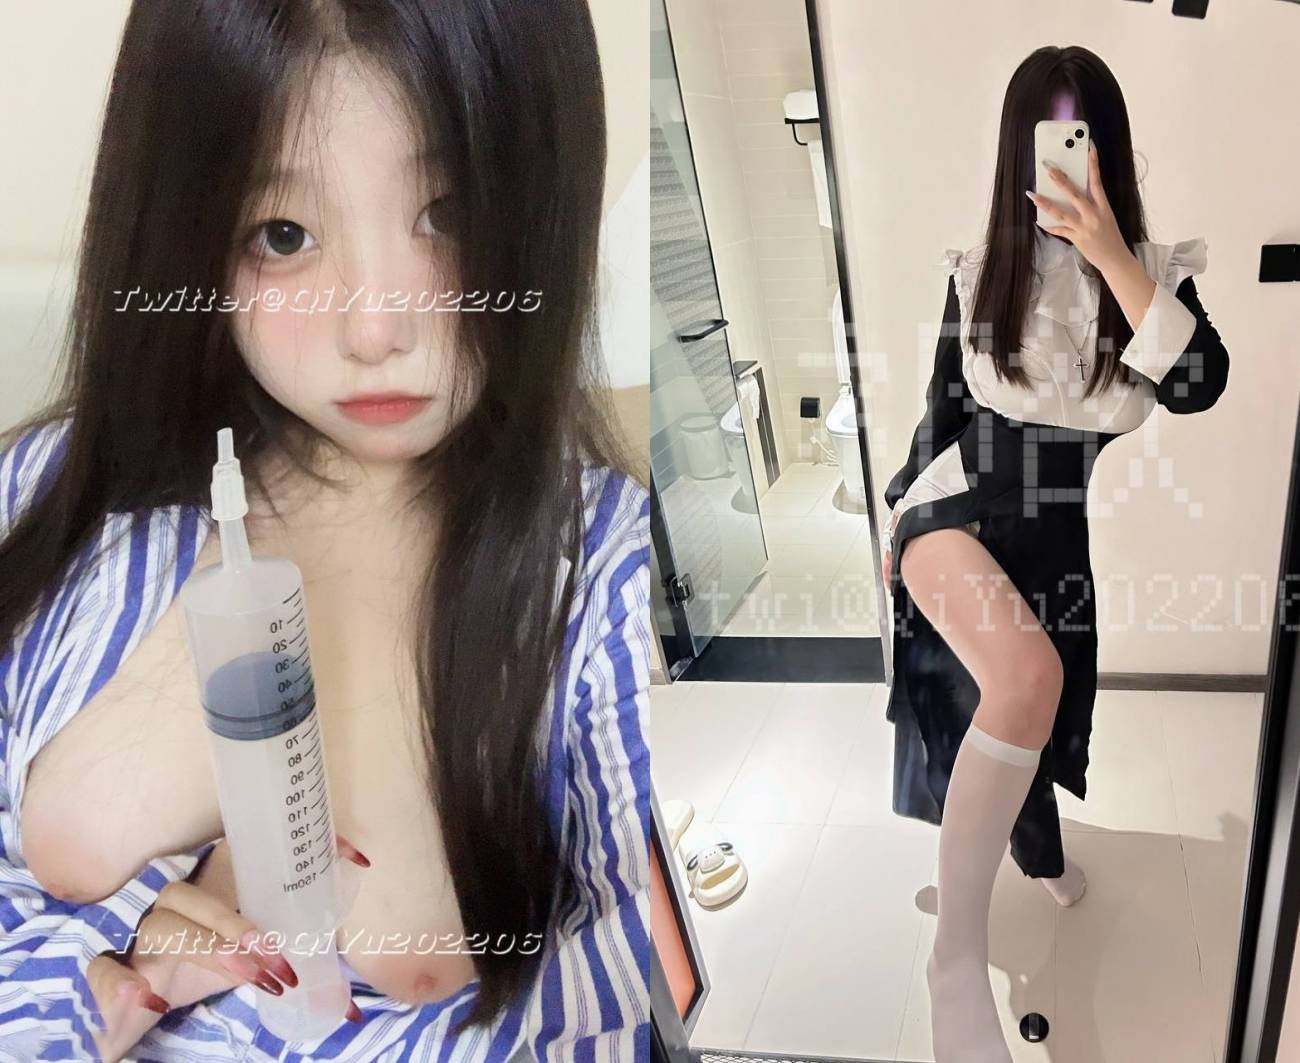 Cô gái trẻ Twitter trẻ trung và bất khả chiến bại [Yu Zai] lộ mặt trong buổi chụp ảnh riêng tư, với bộ ngực to màu hồng và chiếc bánh bao hấp hổ trắng quý hiếm, cô ấy cực kỳ dịu dàng và có điểm giới tính rất cao với đạo cụ (1)